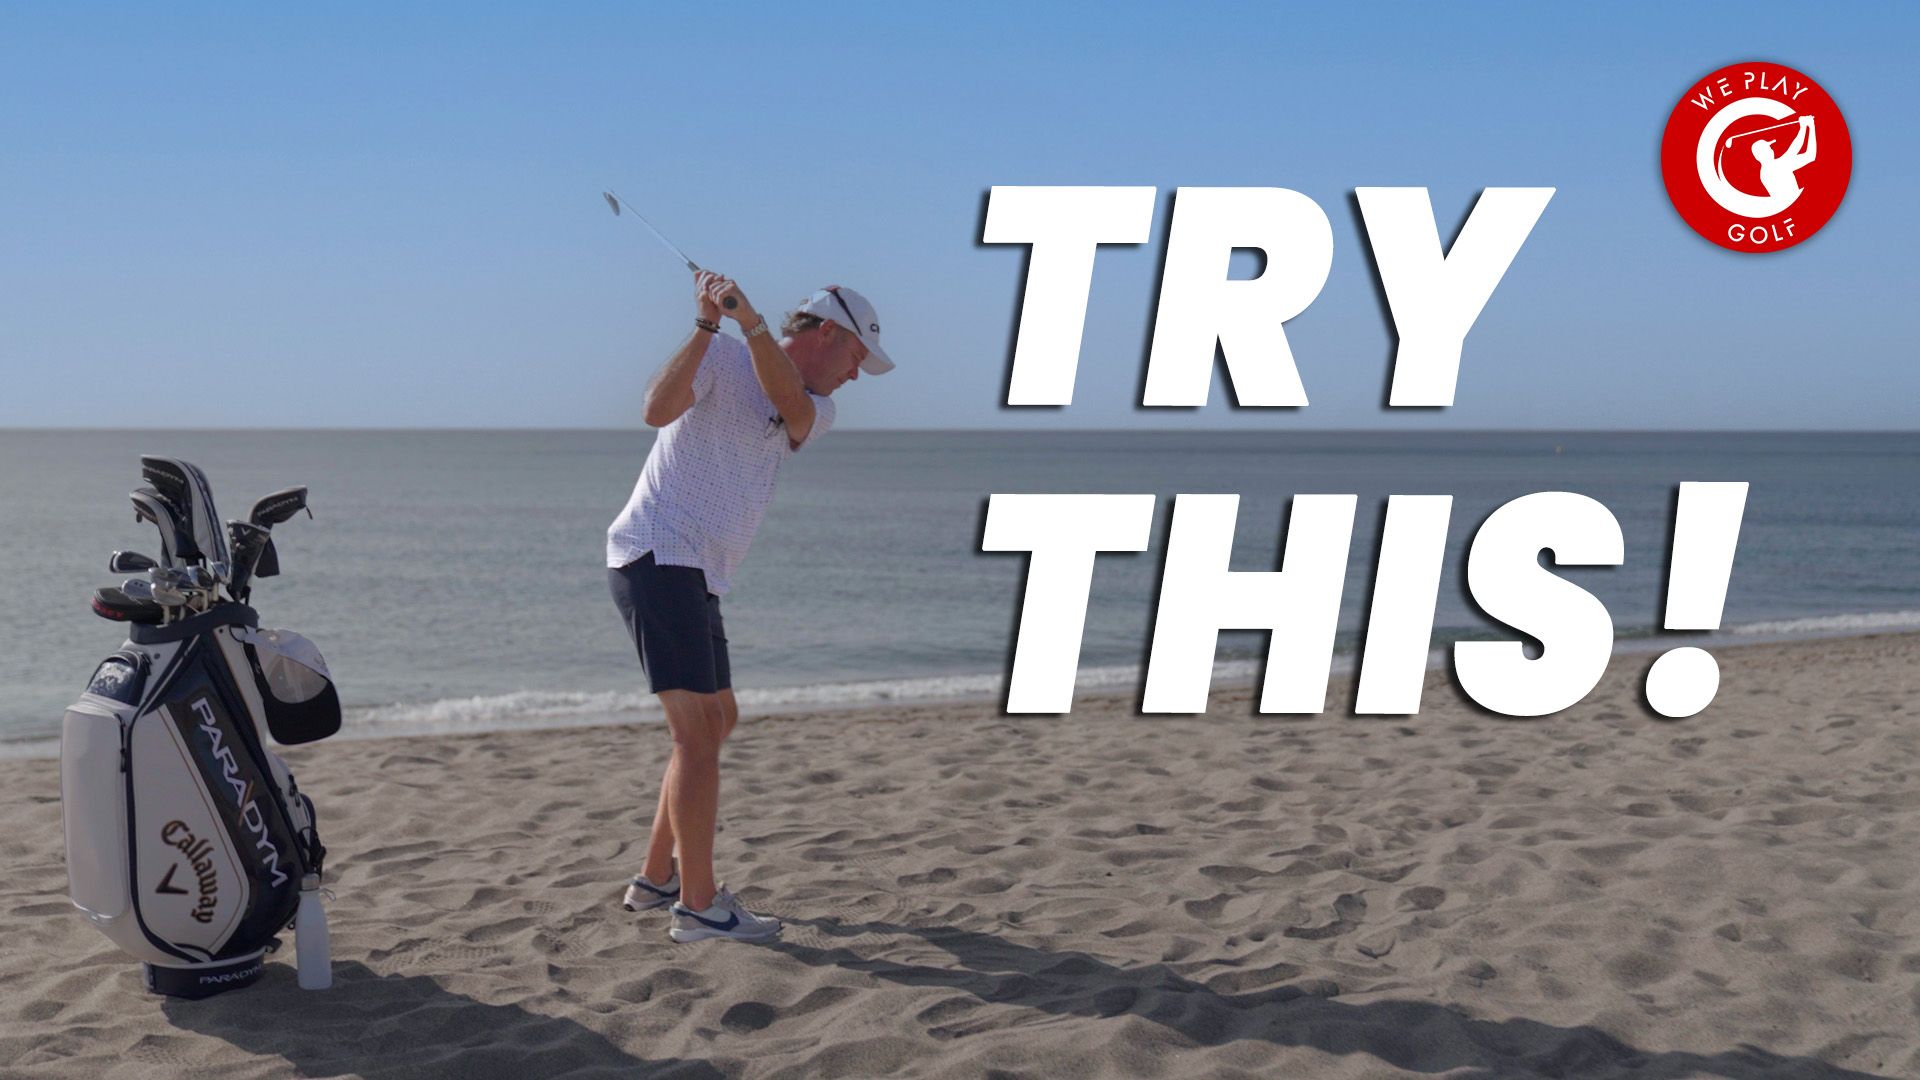 Videotip: Dit moet elke golfer een keer doen: Golfen op het strand! - Blog